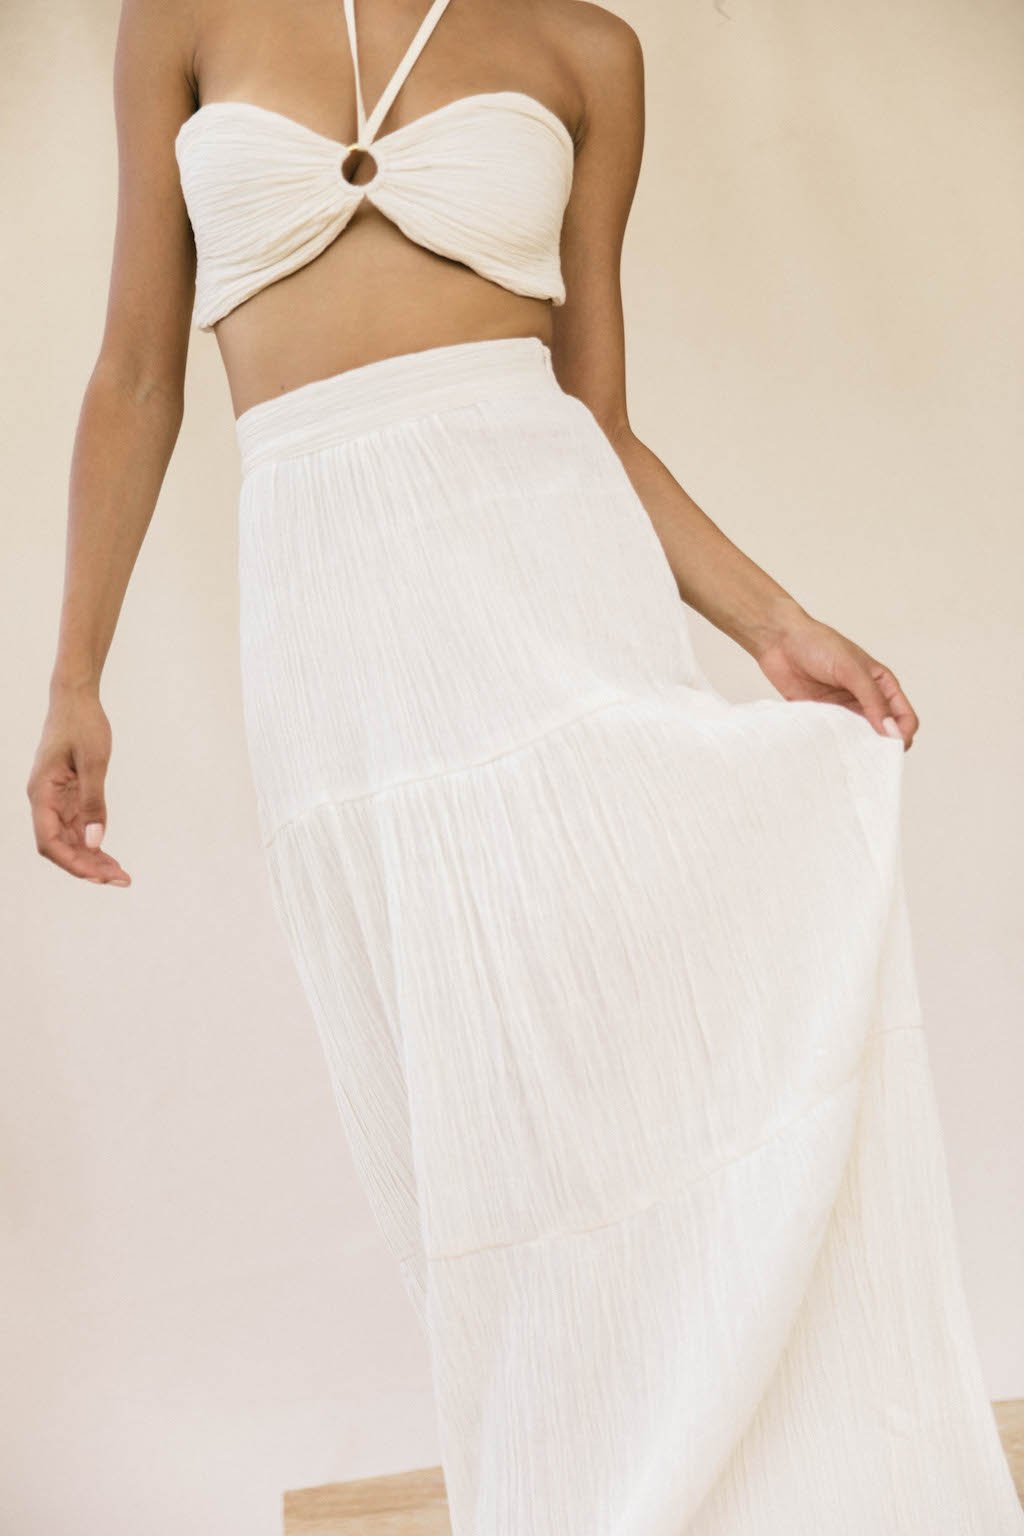 Savannah Morrow Pia Skirt Resort Wear Designers Perfect For Your Casual Wedding Dress 1 - Những thương hiệu Resort Wear này là ...